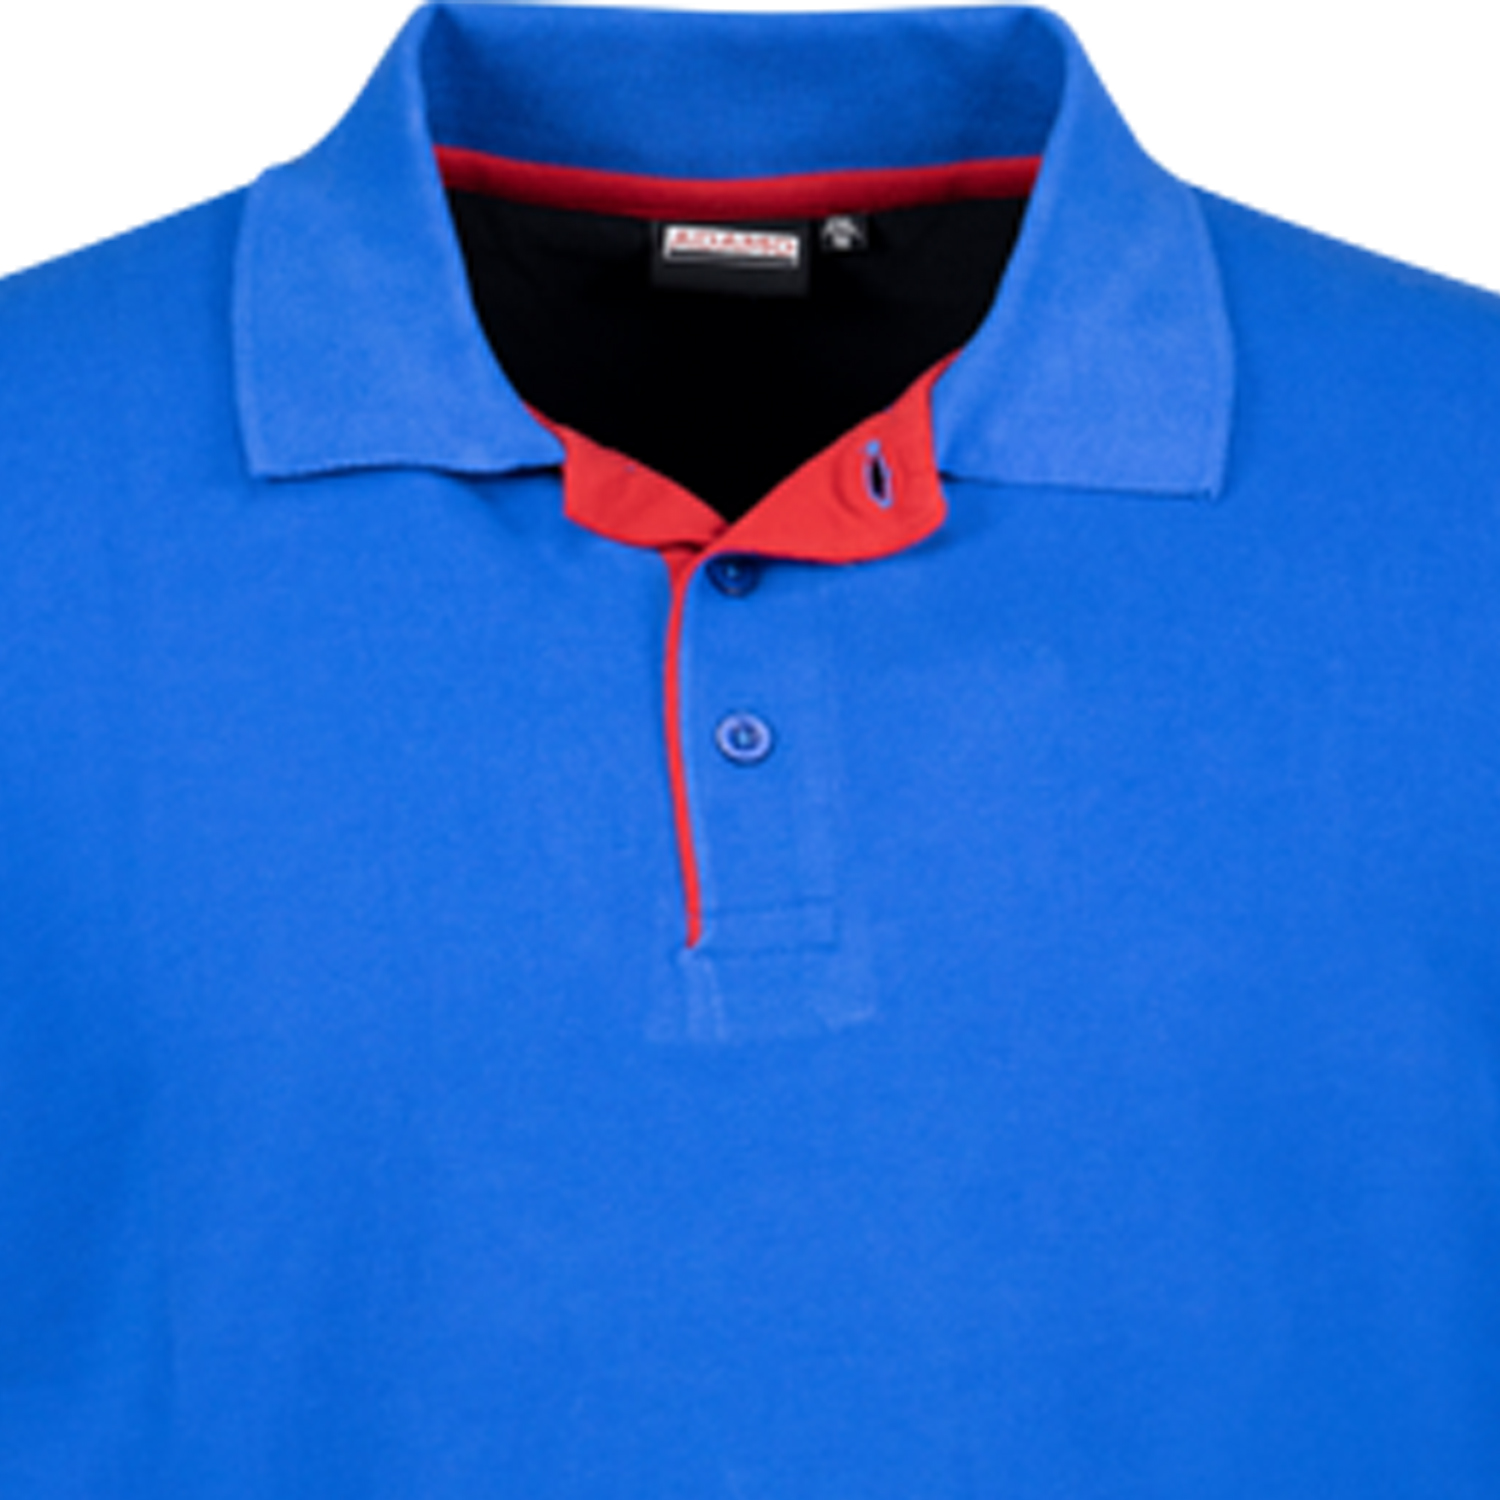 Royalblaues Herren Pique Kurzarm Polo Shirt Serie Pablo COMFORT von Adamo in großen Größen 2XL bis 12XL